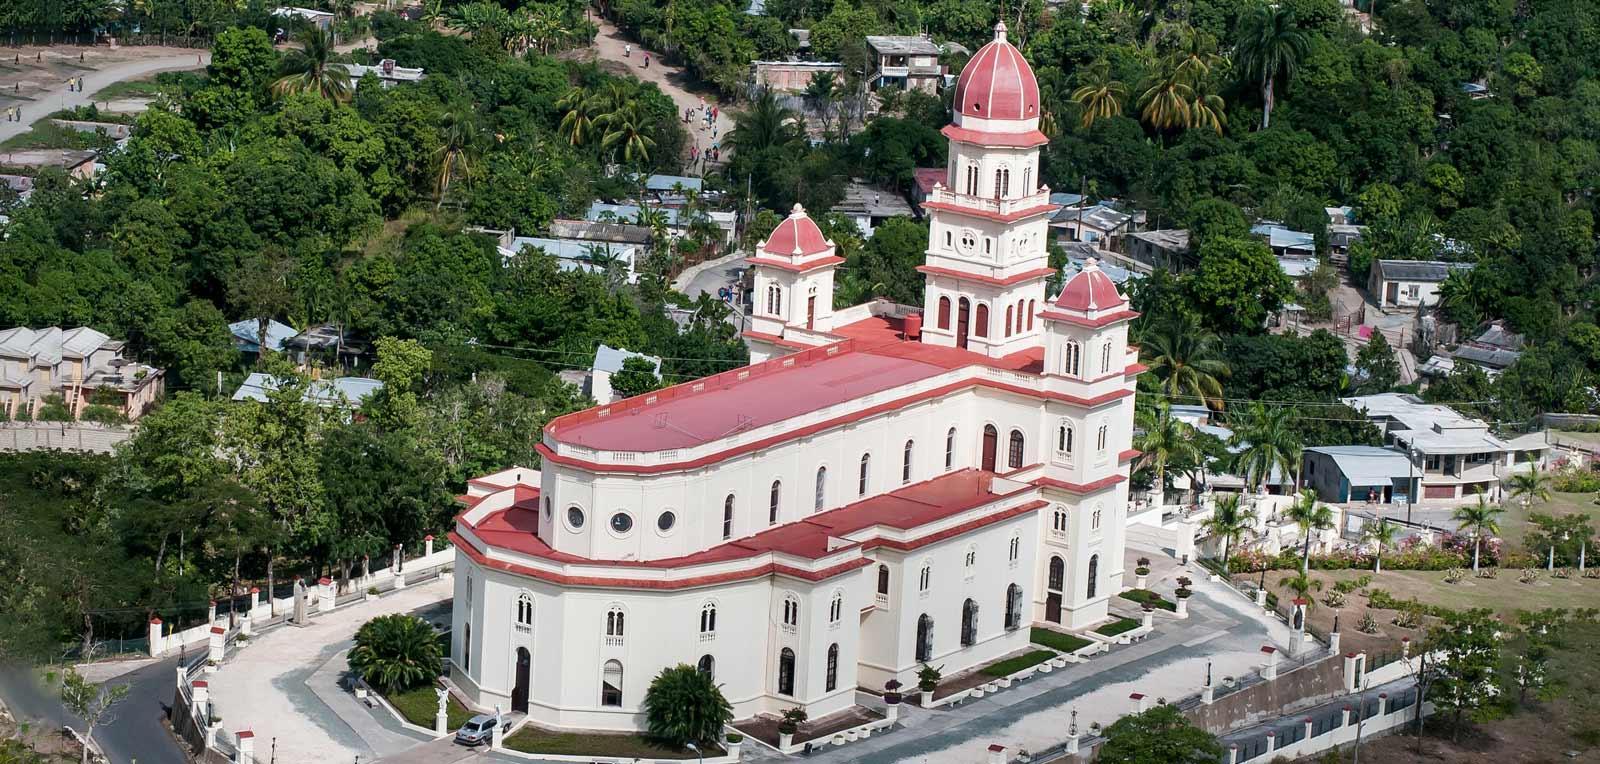 Historia y espiritualidad en El Cobre, de Santiago de Cuba